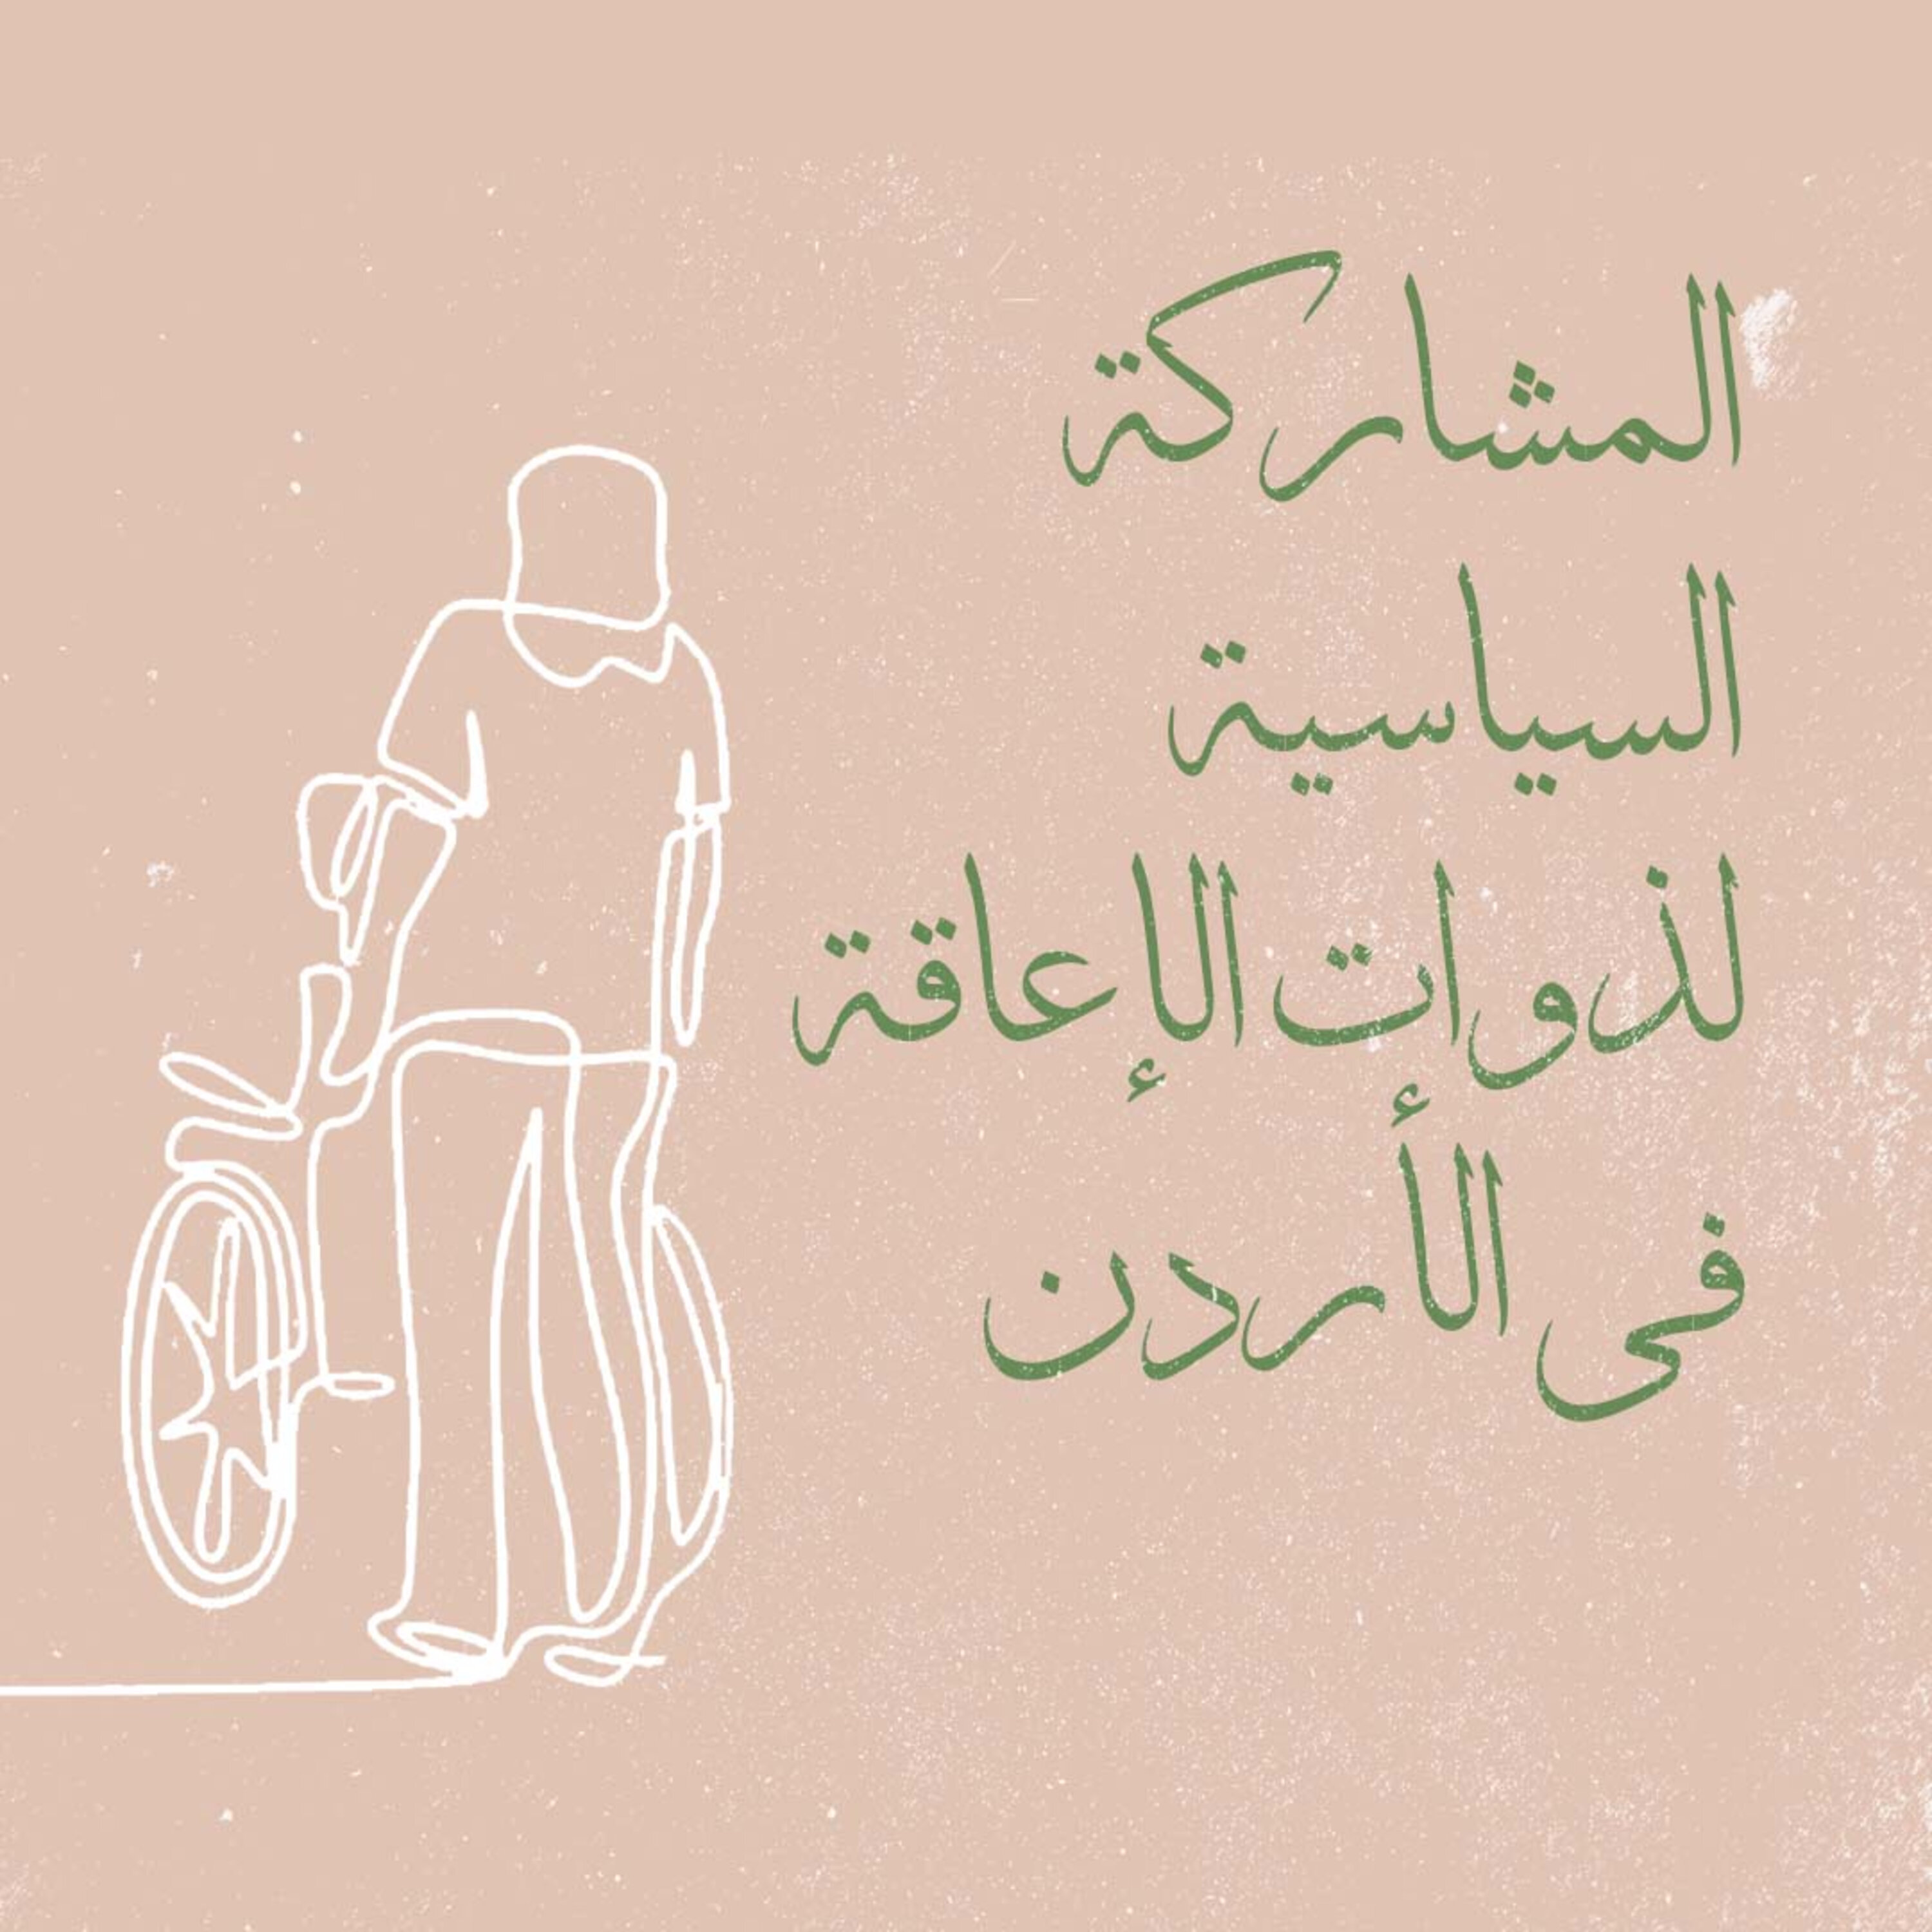 المشاركة السياسية لذوات الإعاقة في الأردن